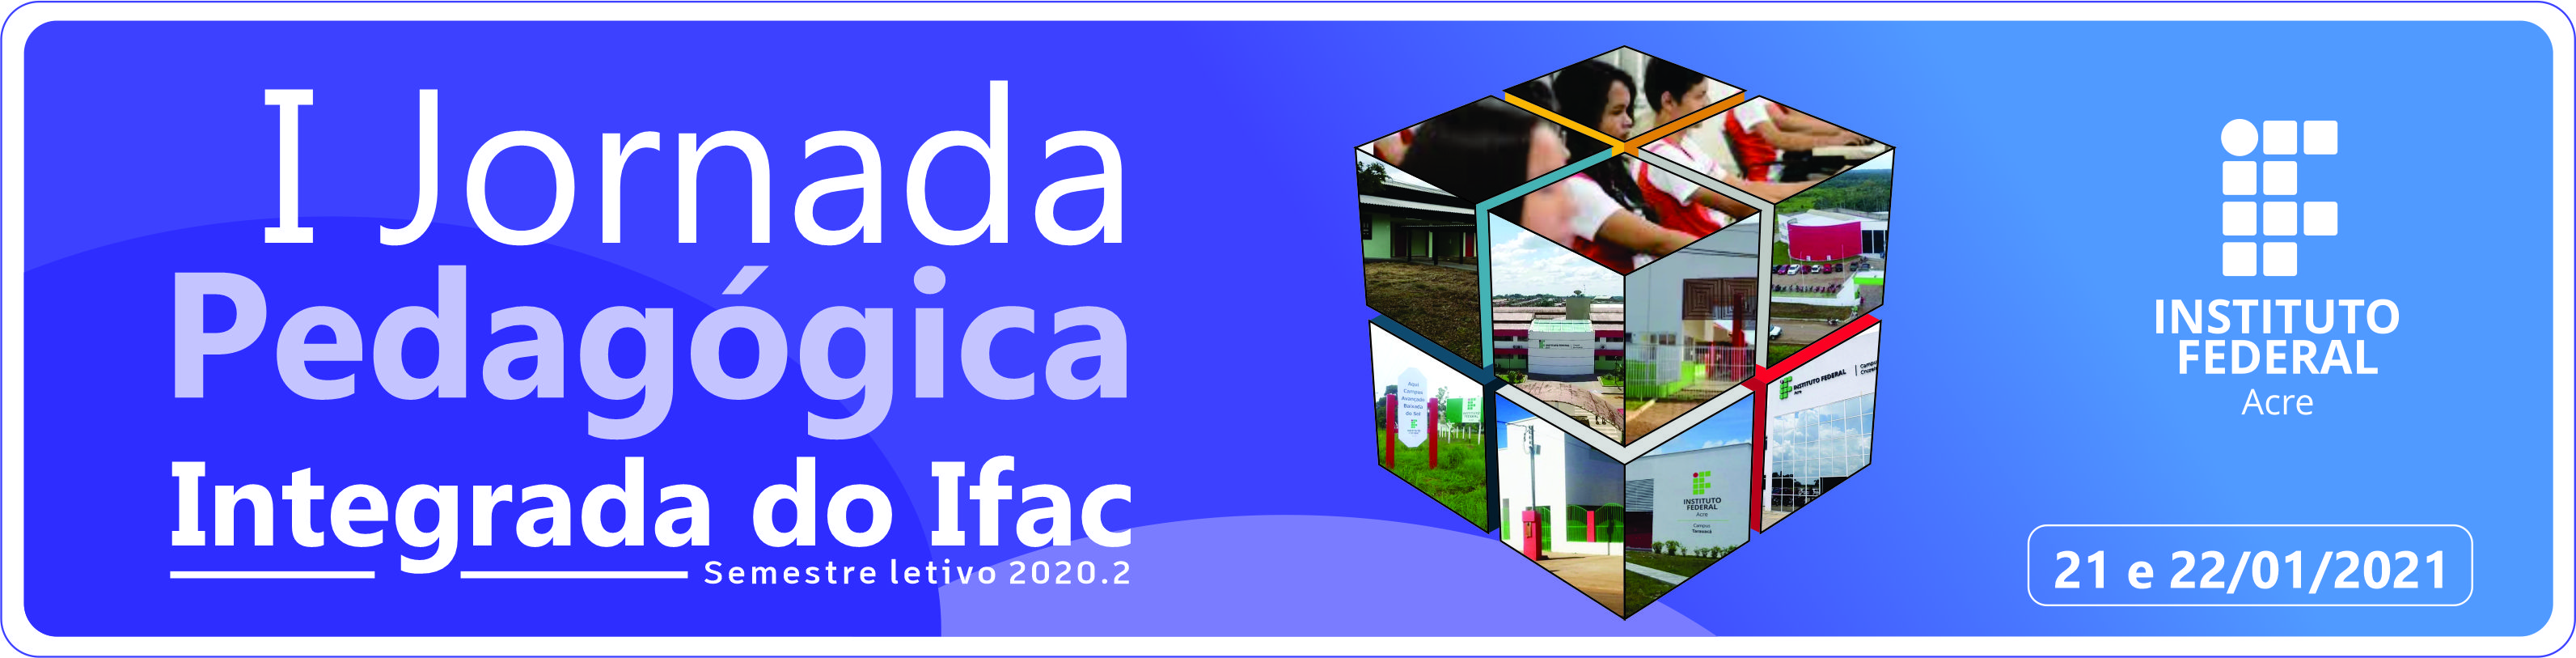 banner do I Jornada Pedagógica Integrada do Ifac